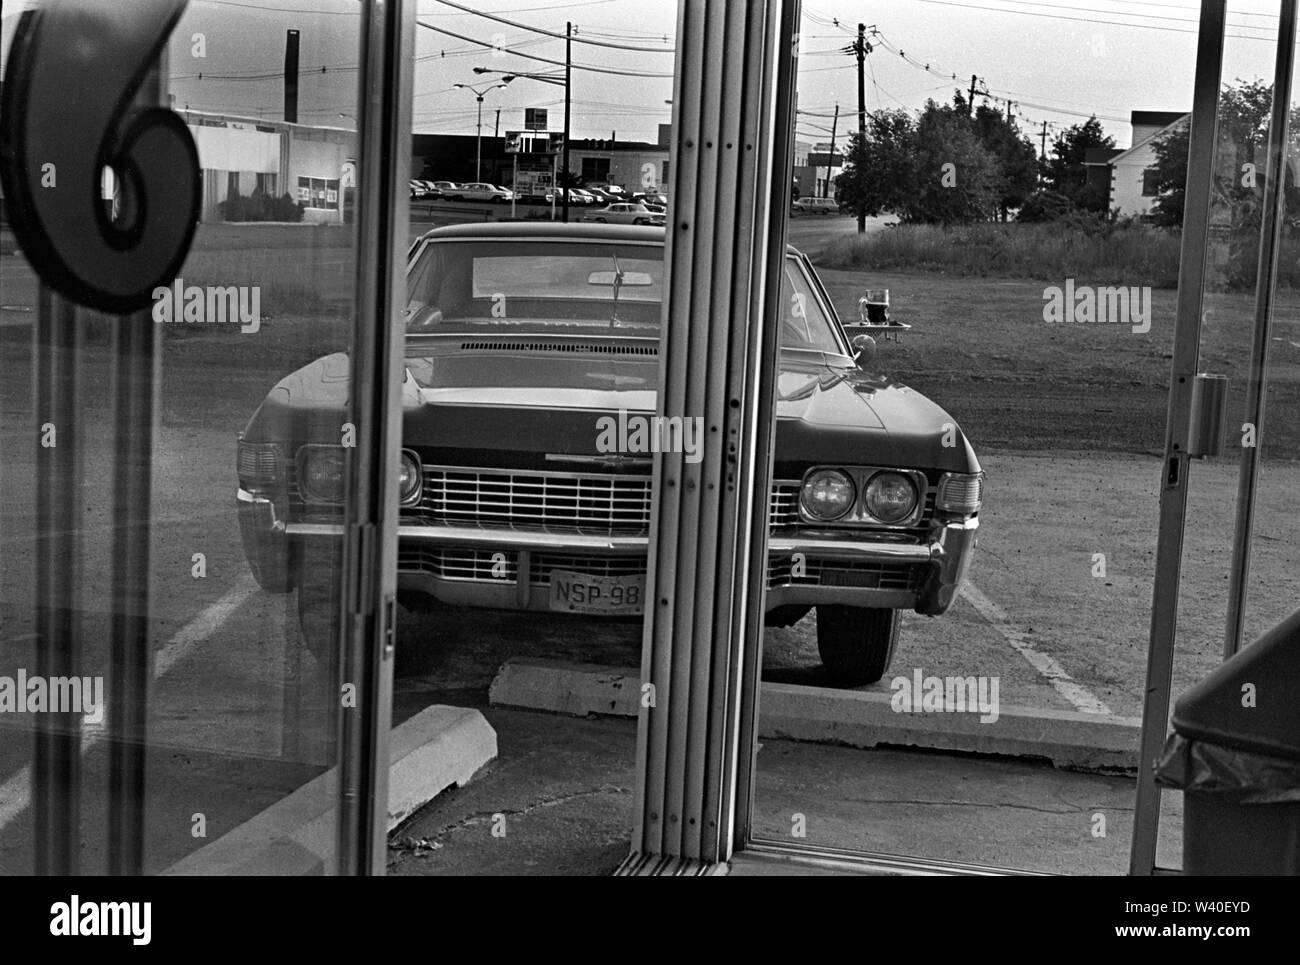 Guidare in sessanta fast food ristorante, piccolo tavolo fissato alla porta della macchina quando arriva l'ordine. New Brunswick, New Jersey. 1969, STATI UNITI D'AMERICA 60s NOI HOMER SYKES Foto Stock